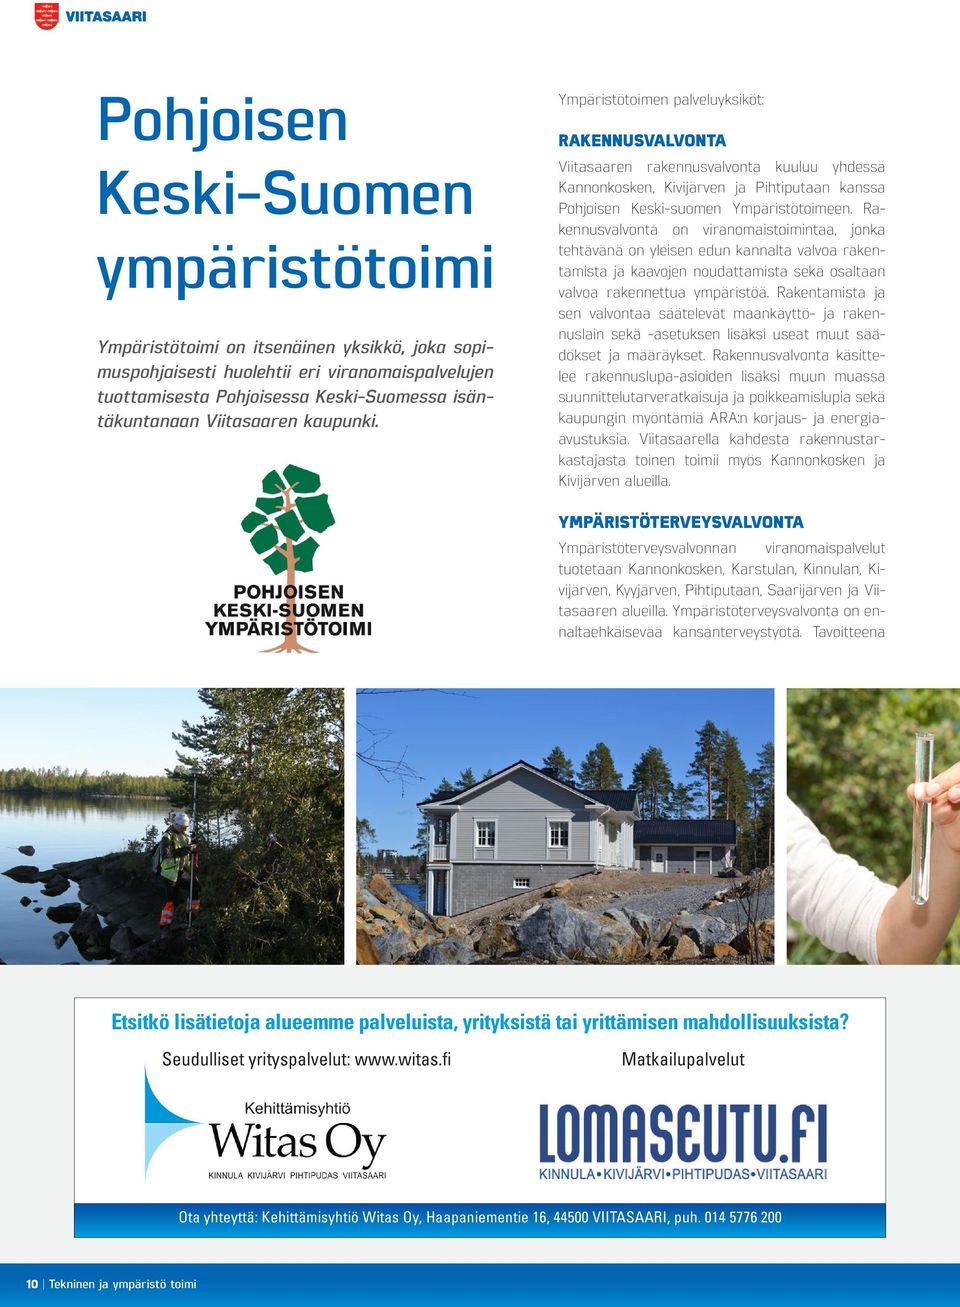 Ympäristötoimen palveluyksiköt: RAKENNUSVALVONTA Viitasaaren rakennusvalvonta kuuluu yhdessä Kannonkosken, Kivijärven ja Pihtiputaan kanssa Pohjoisen Keski-suomen Ympäristötoimeen.